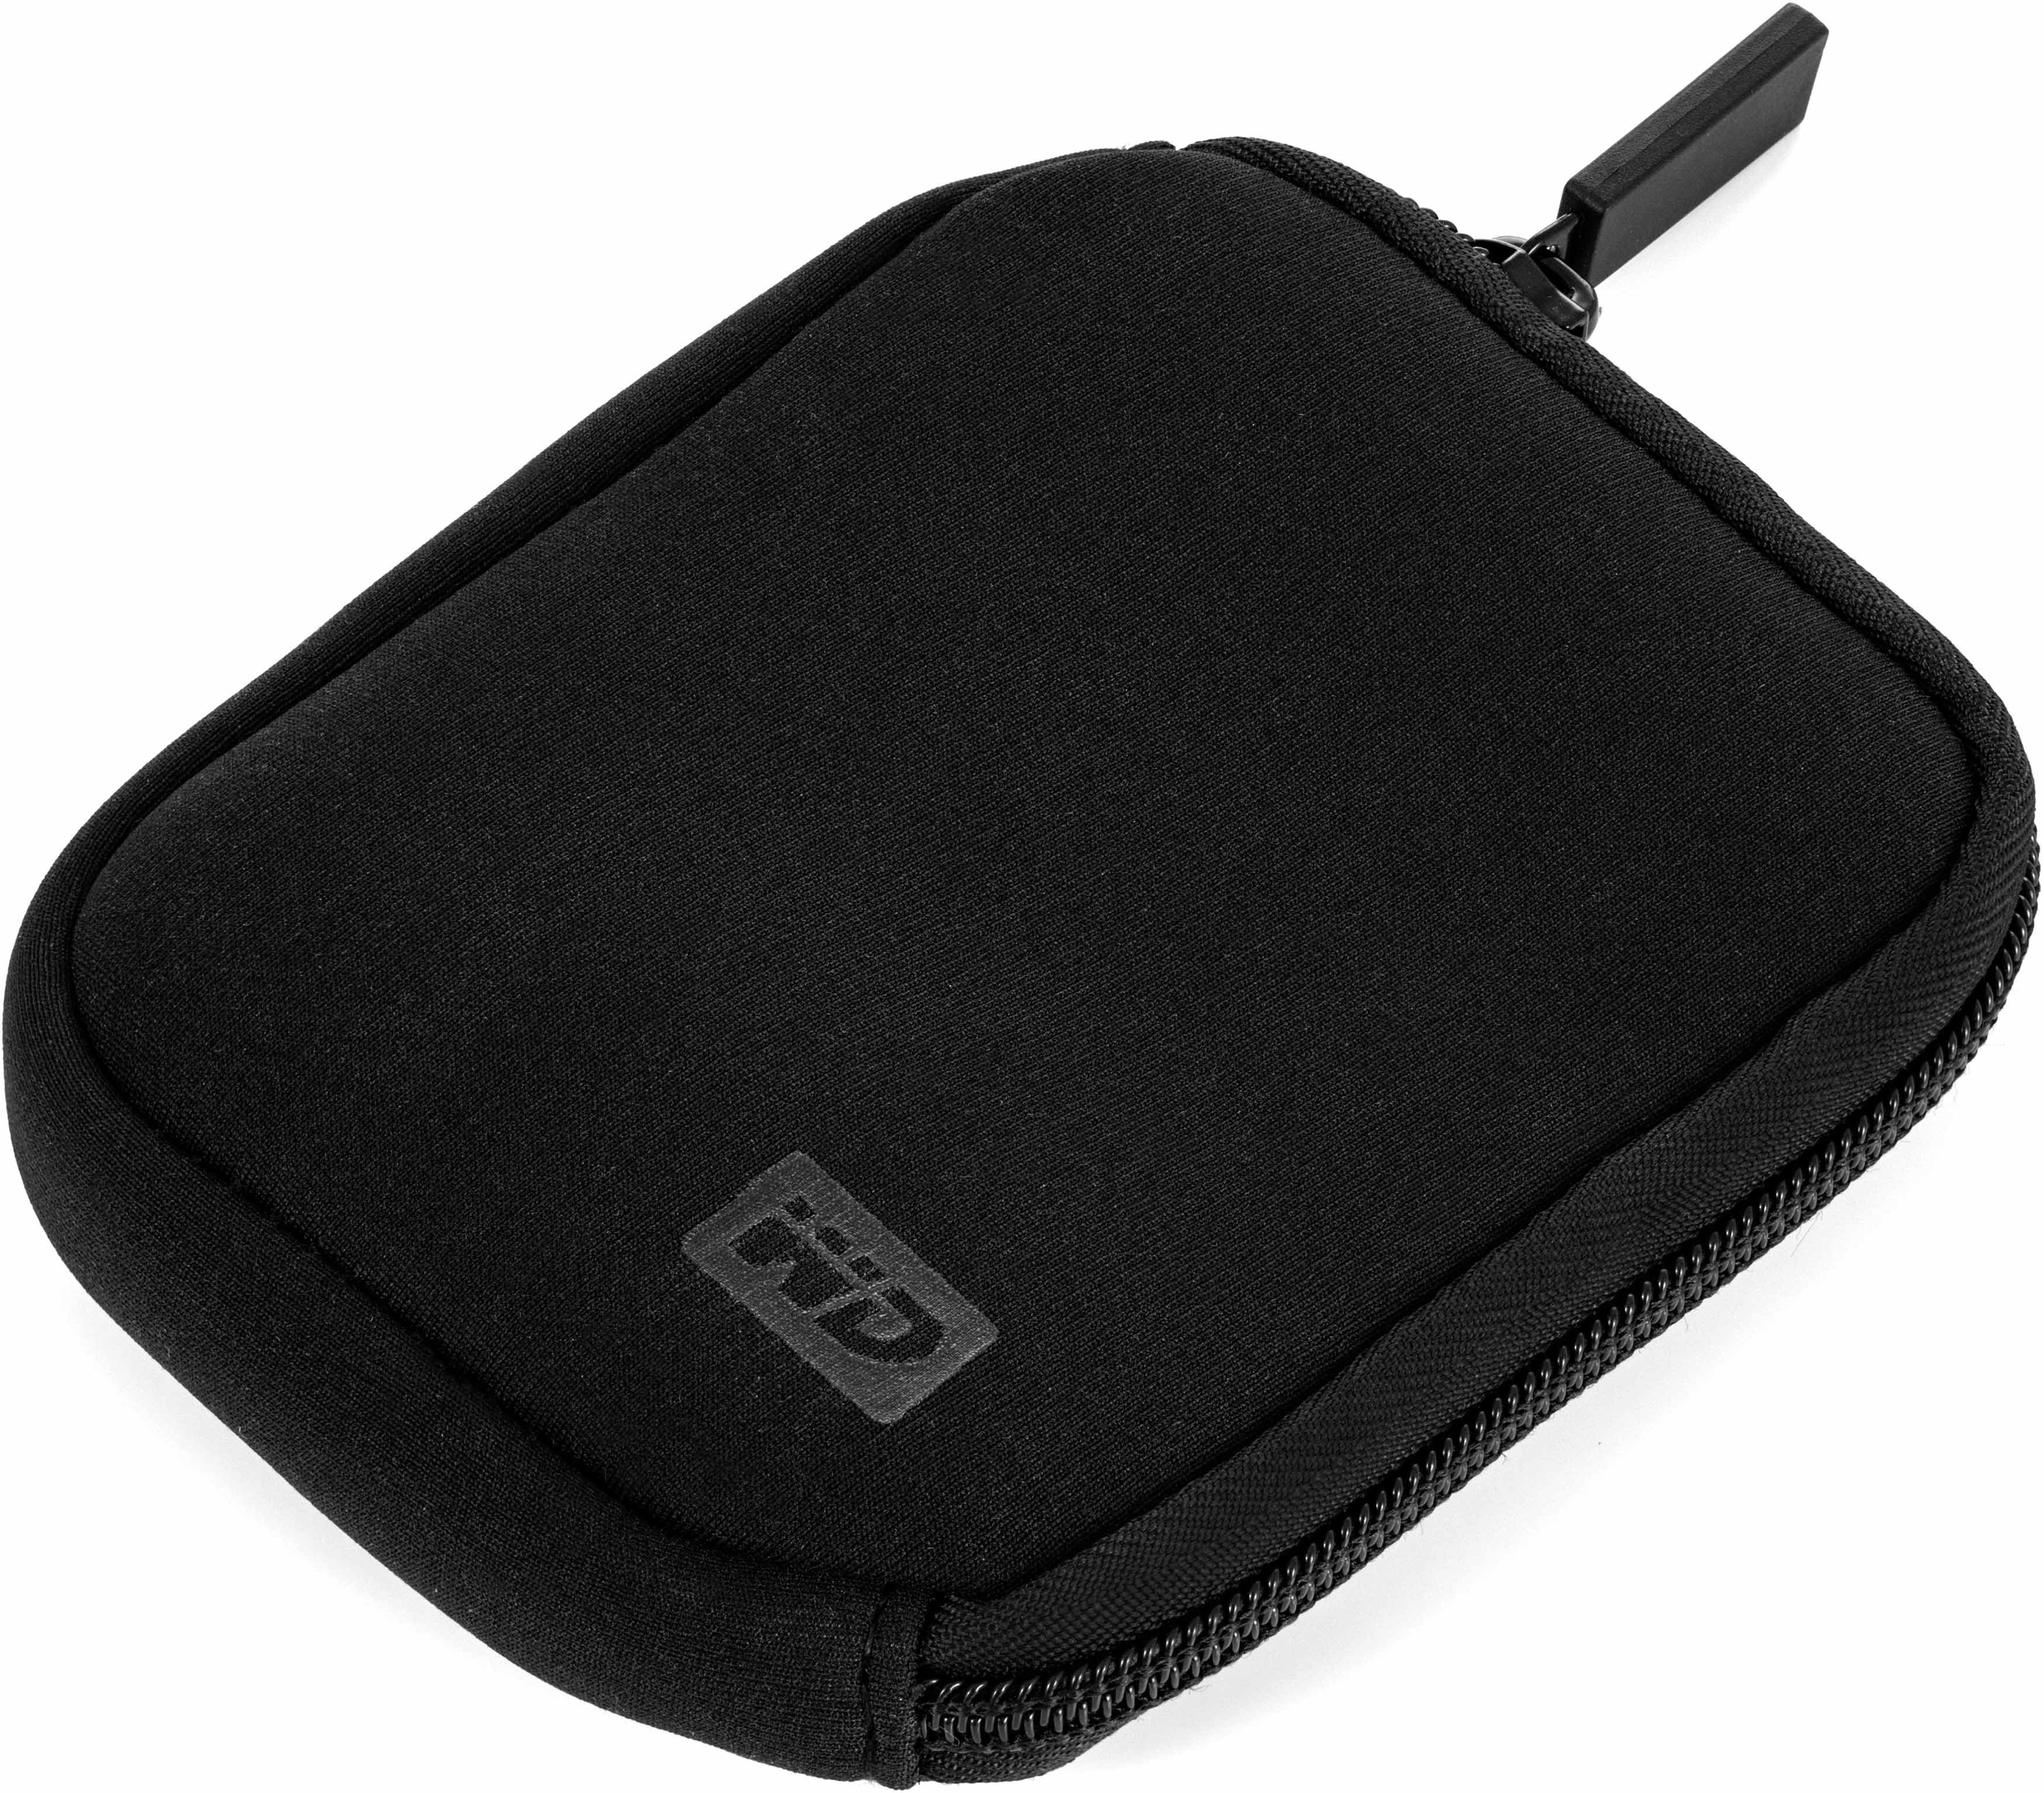 Western Digital Festplattentasche (für 2,5" Festplatten), zur sicheren Aufbewahrung von SSDs / HDDs, Farbe schwarz | Festplatten-Taschen